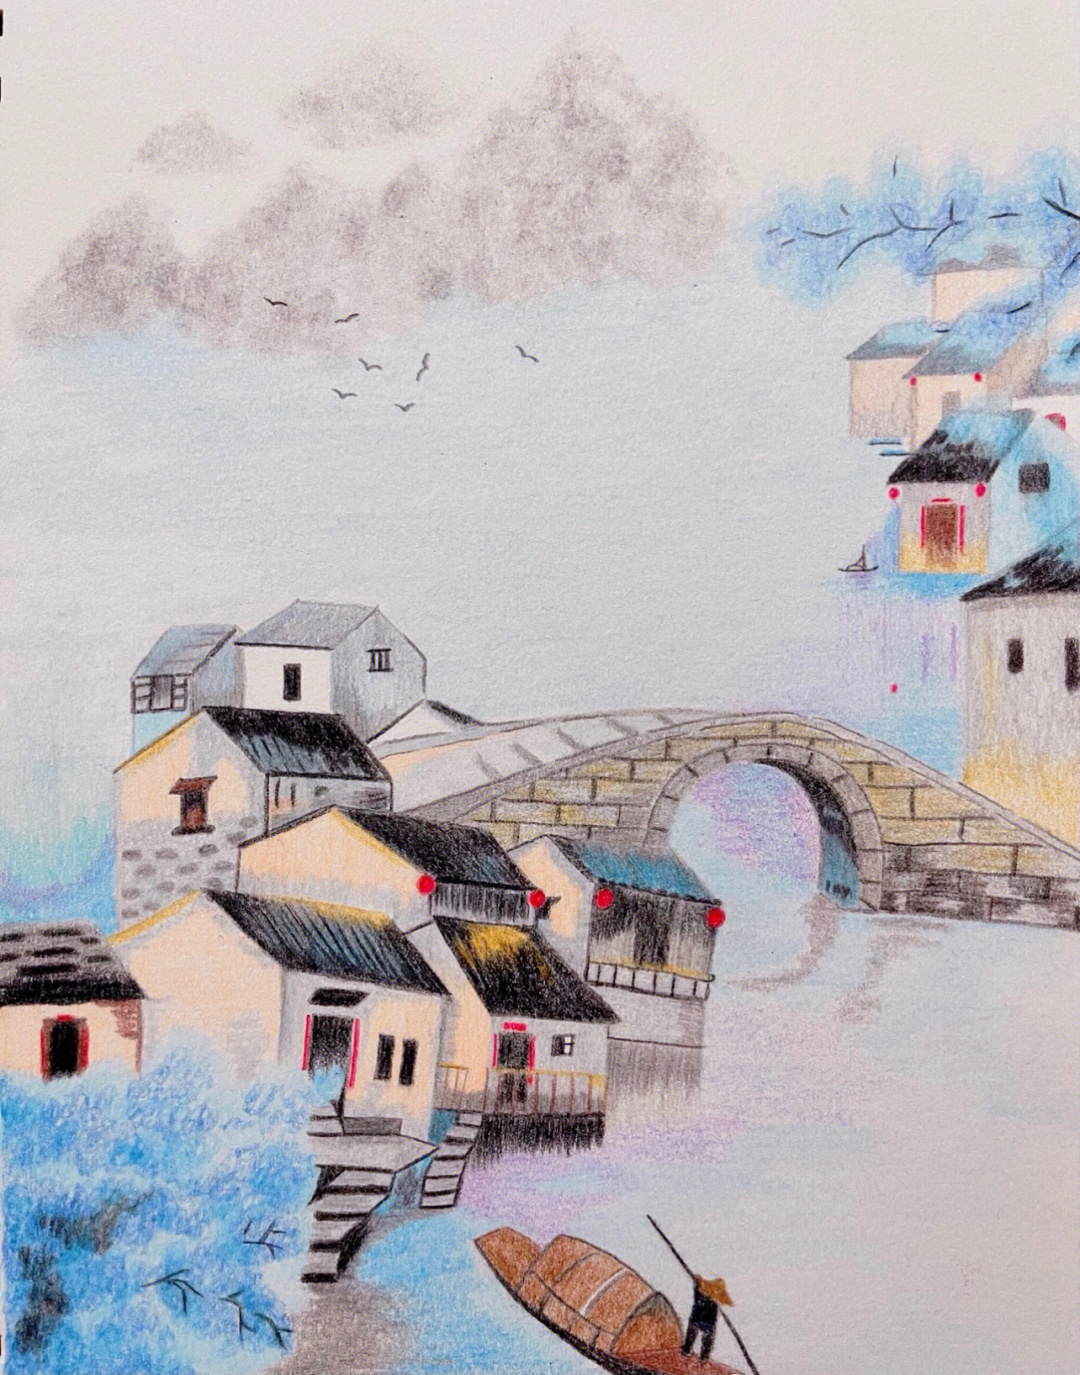 江南水乡房屋手绘图片图片